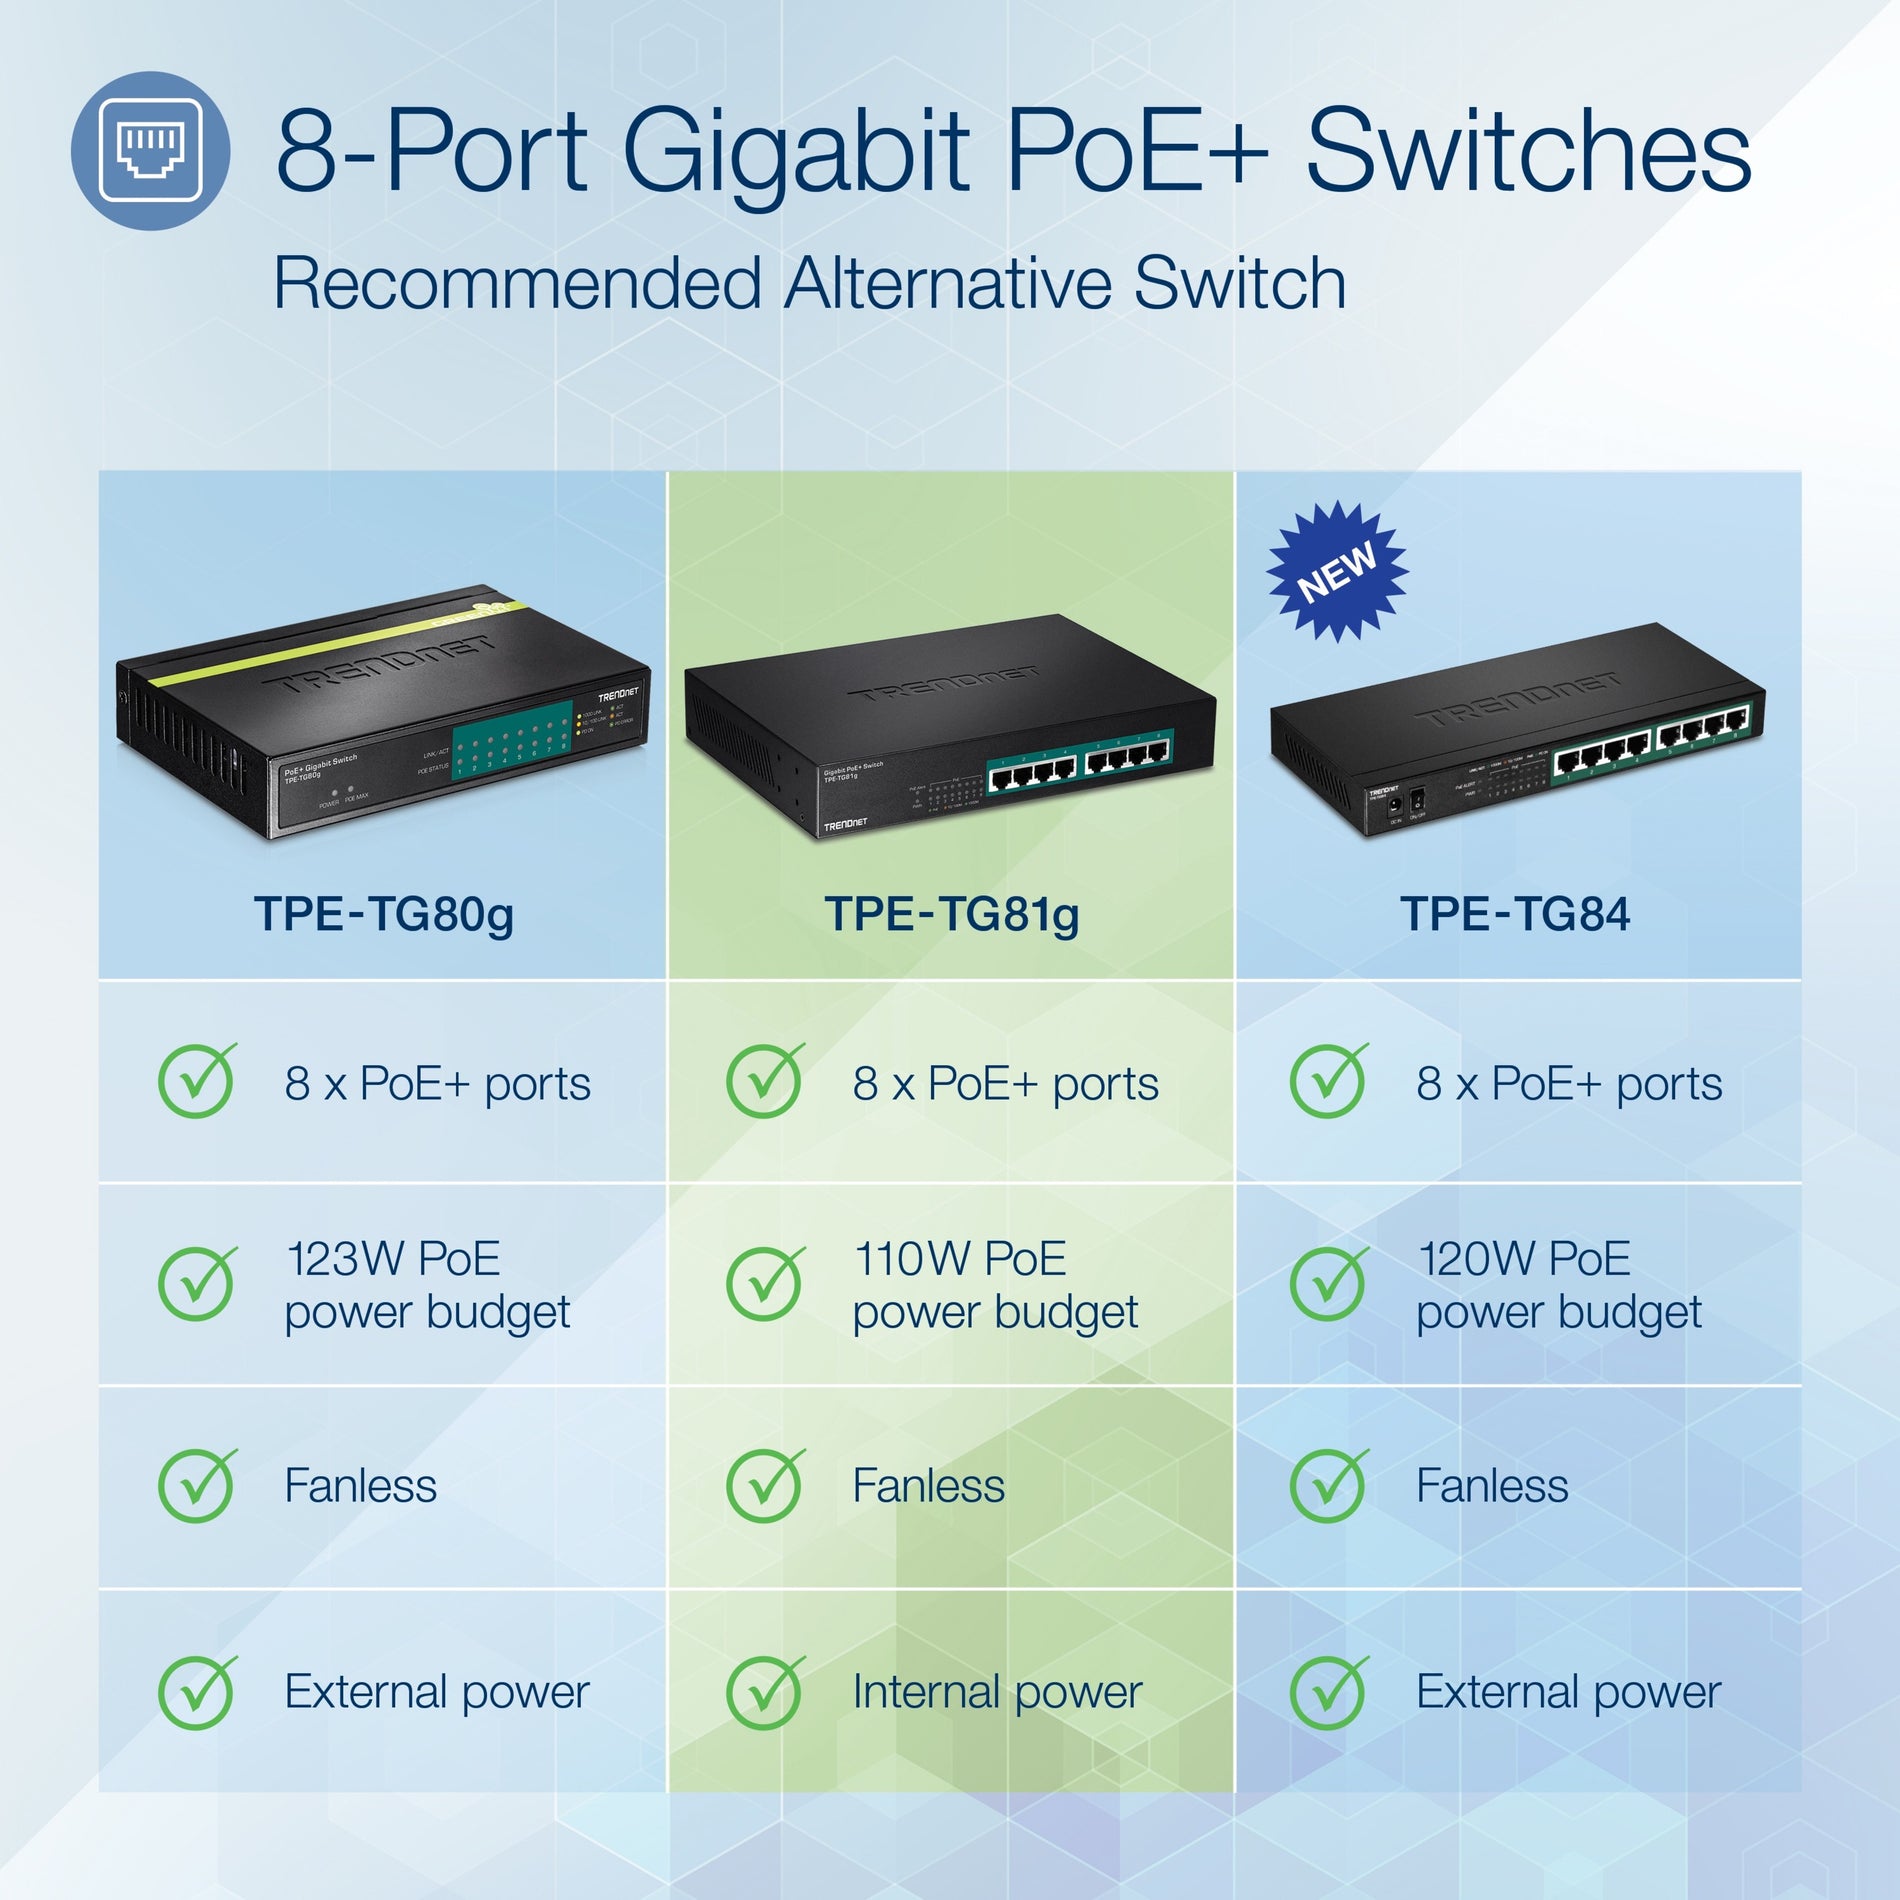 TRENDnet TPE-TG81g 8-port Gigabit GREENnet PoE+ Switch, rack mountable